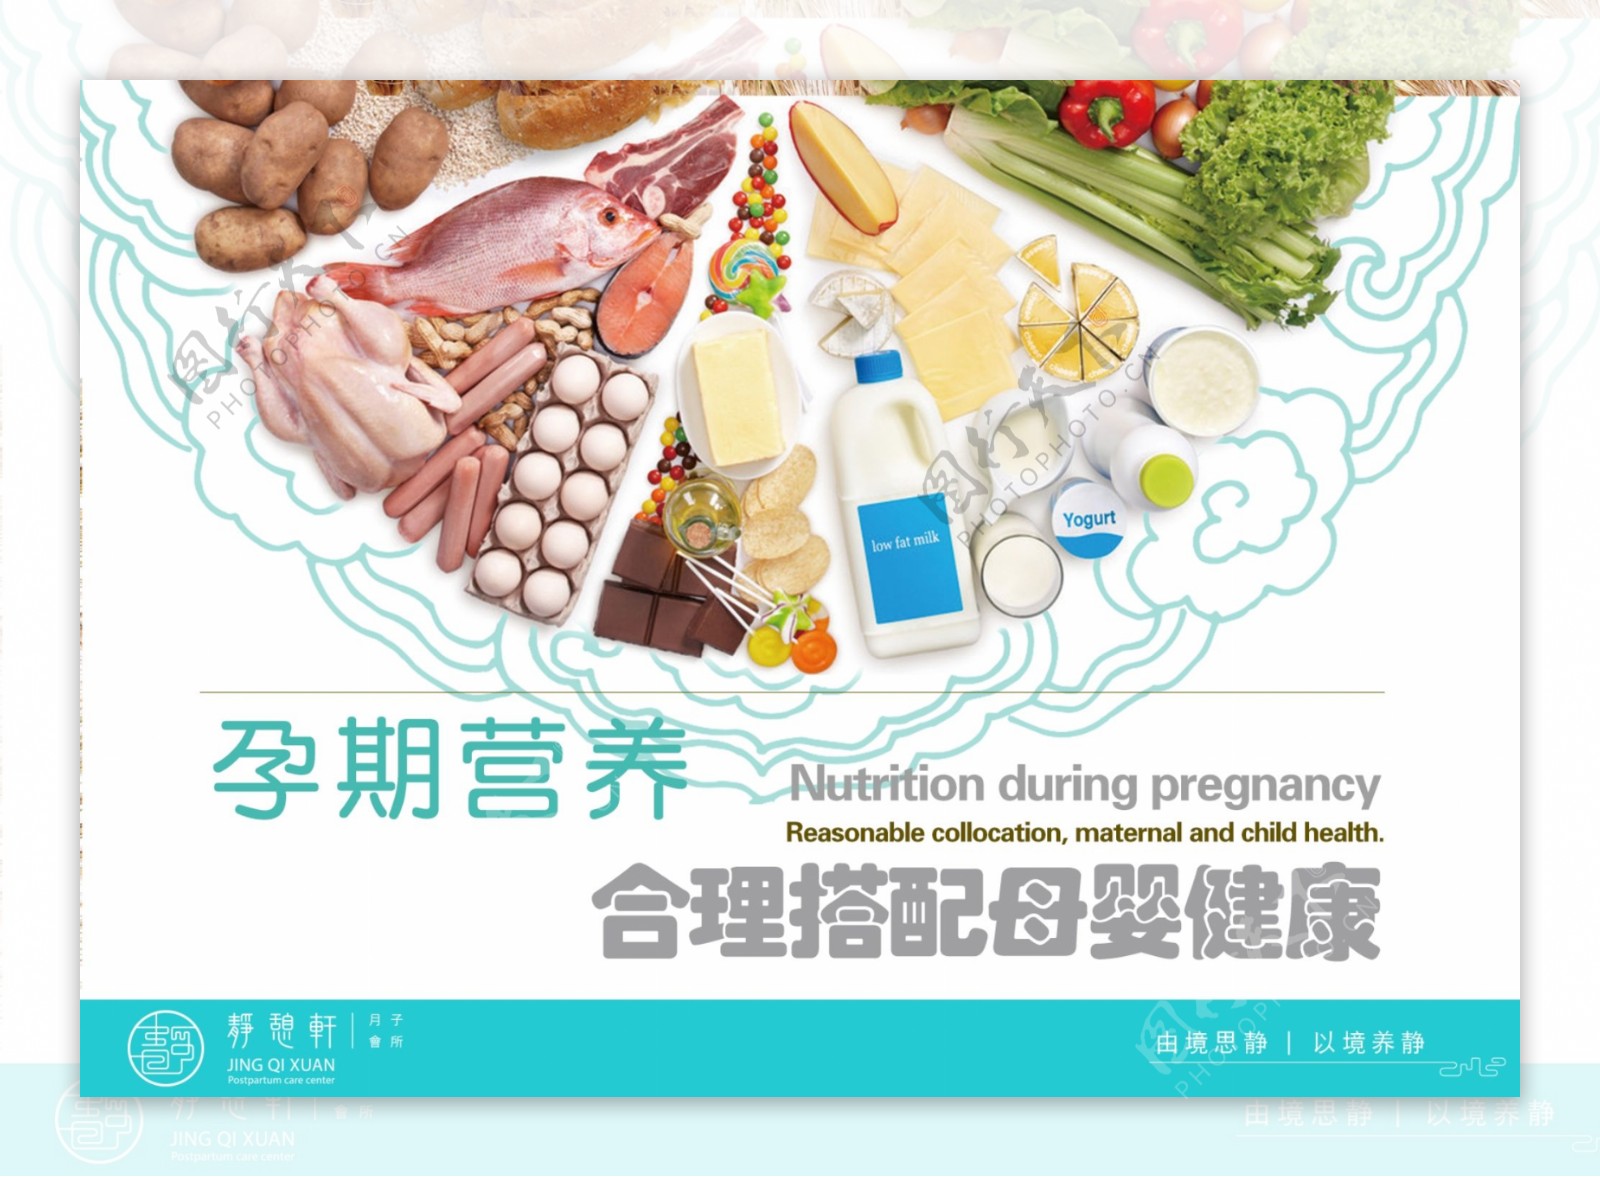 孕期营养合理搭配母婴健康